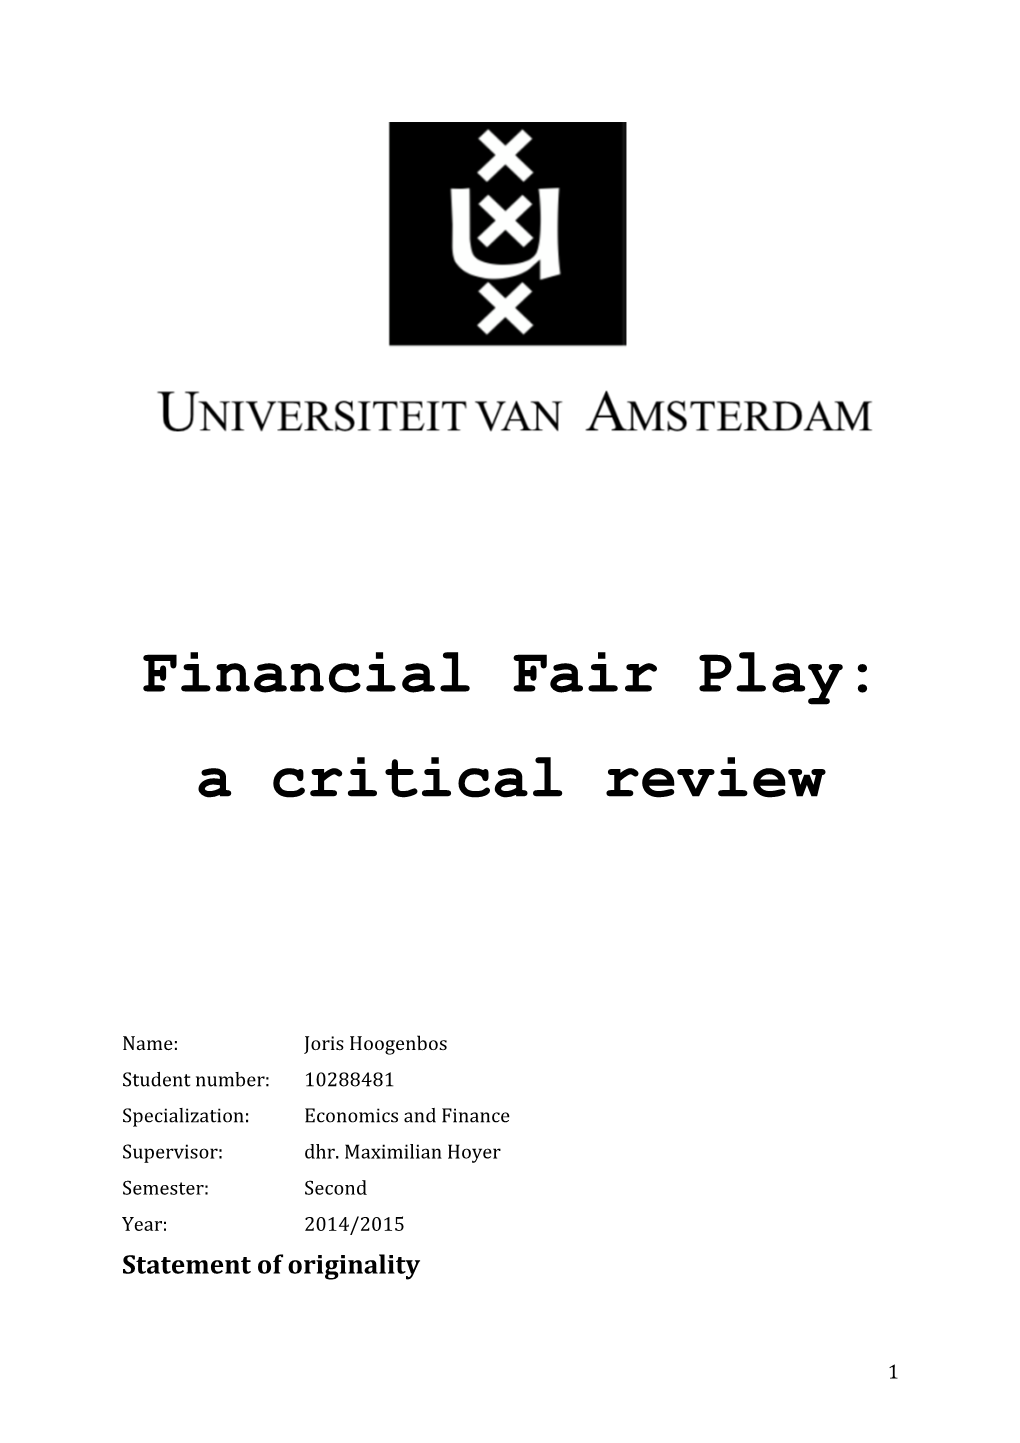 Financial Fair Play: a Critical Review